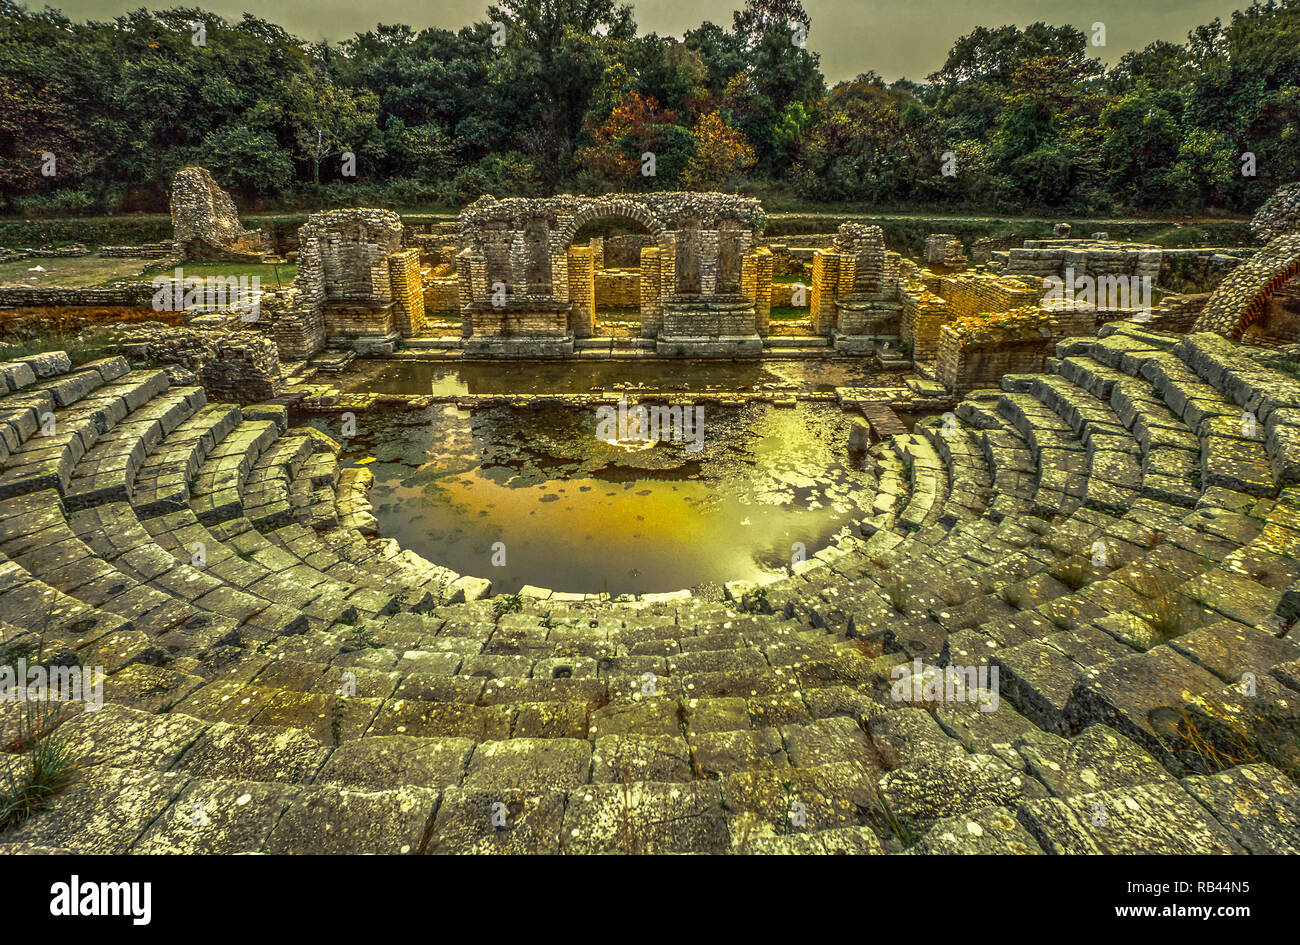 Il teatro di Butrinto, greca sito archeologico in Albania. Fotografia analogica Foto Stock